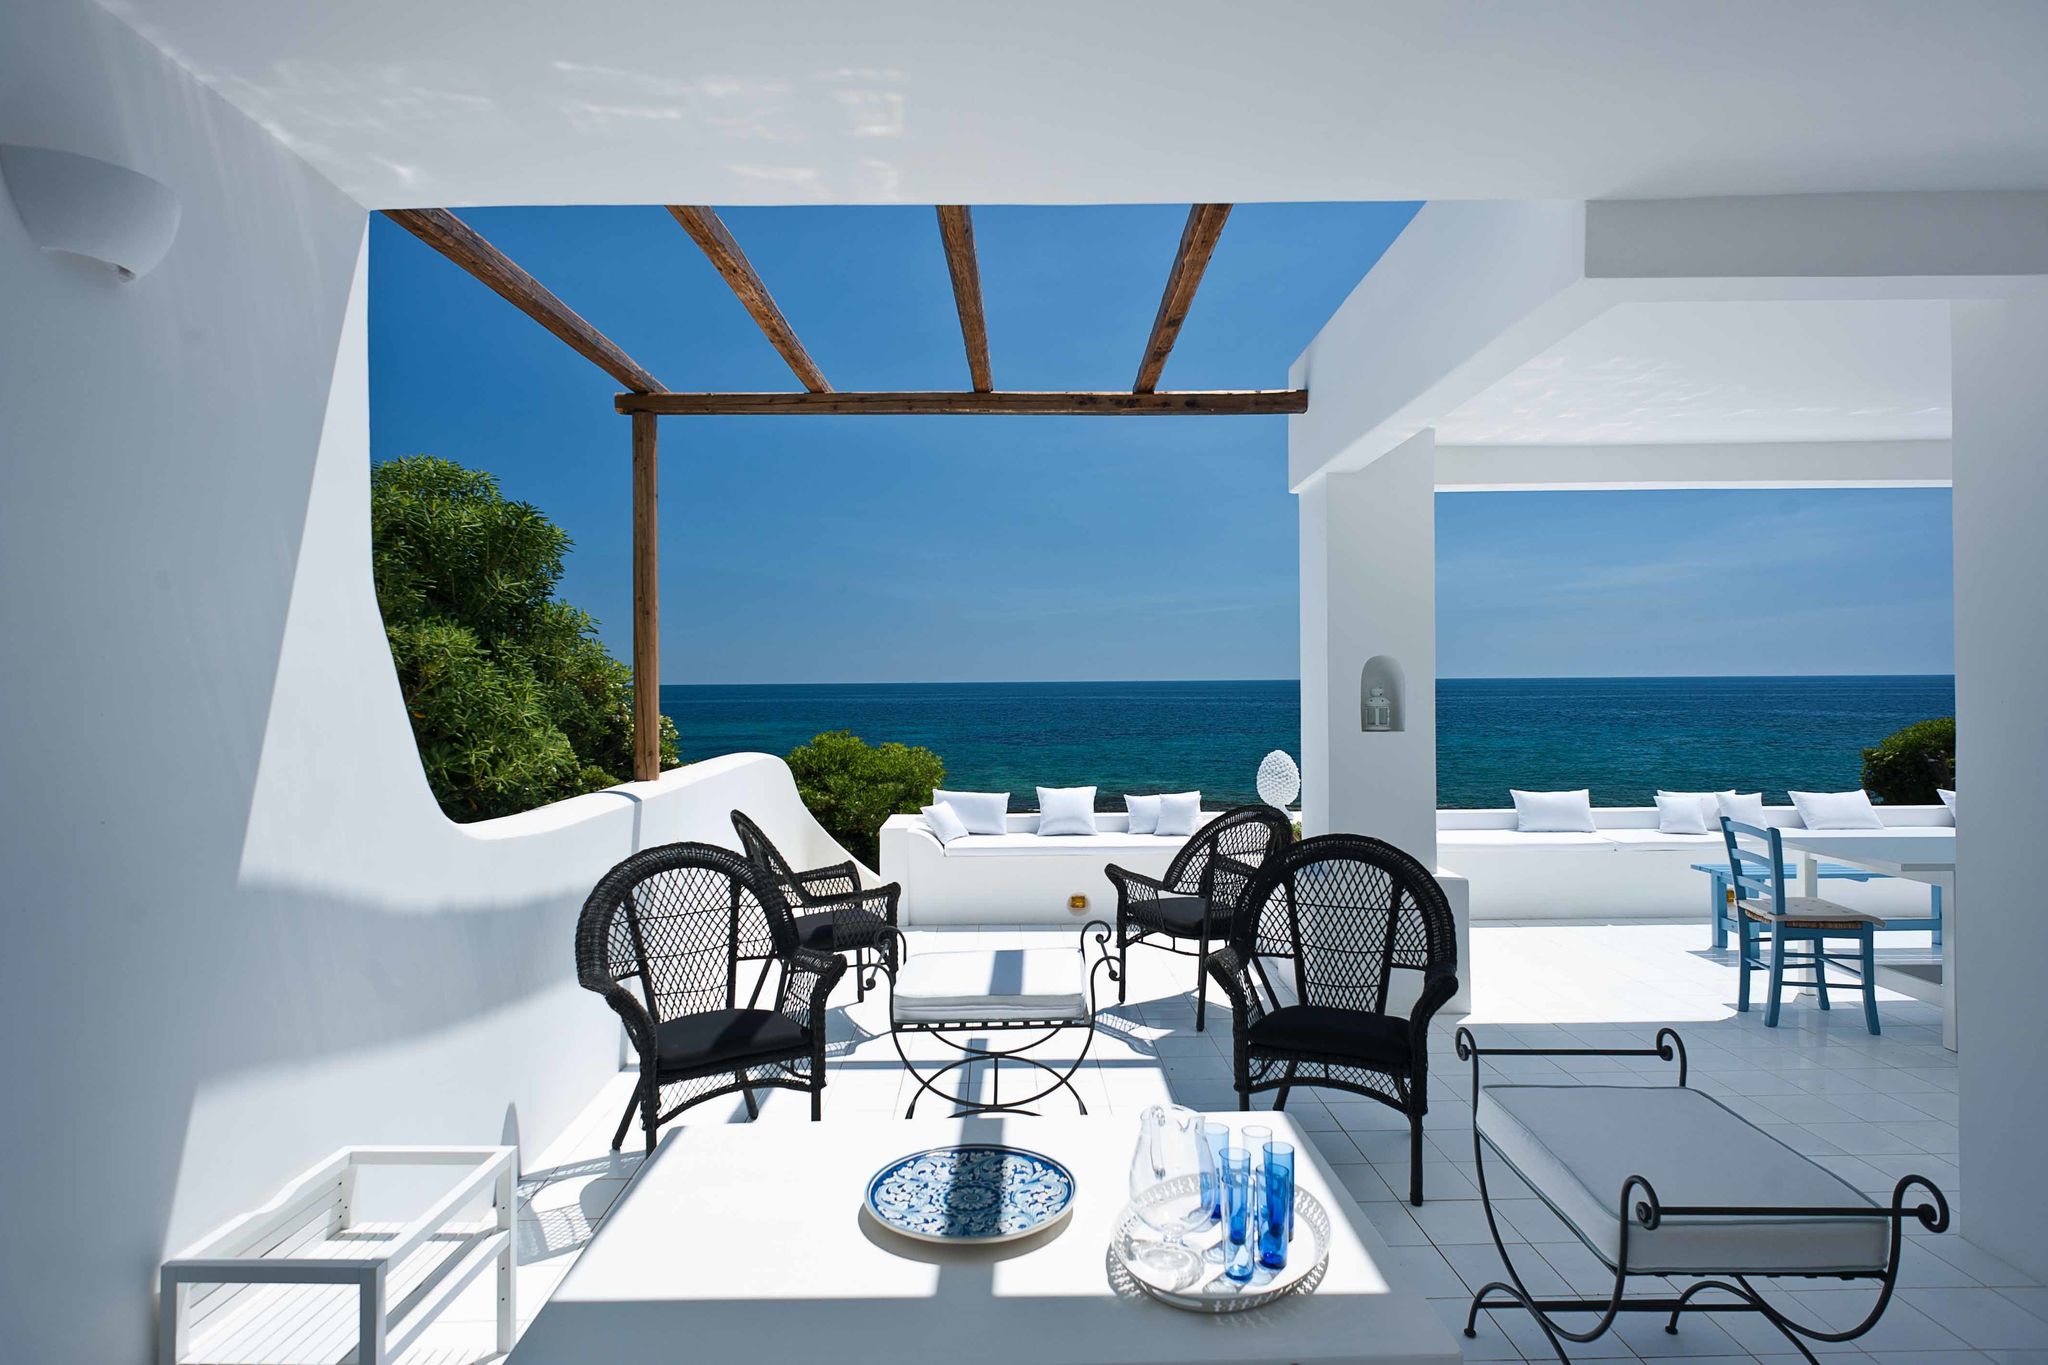 Exclusieve villa aan de oostkust van Sicilië met zeezicht